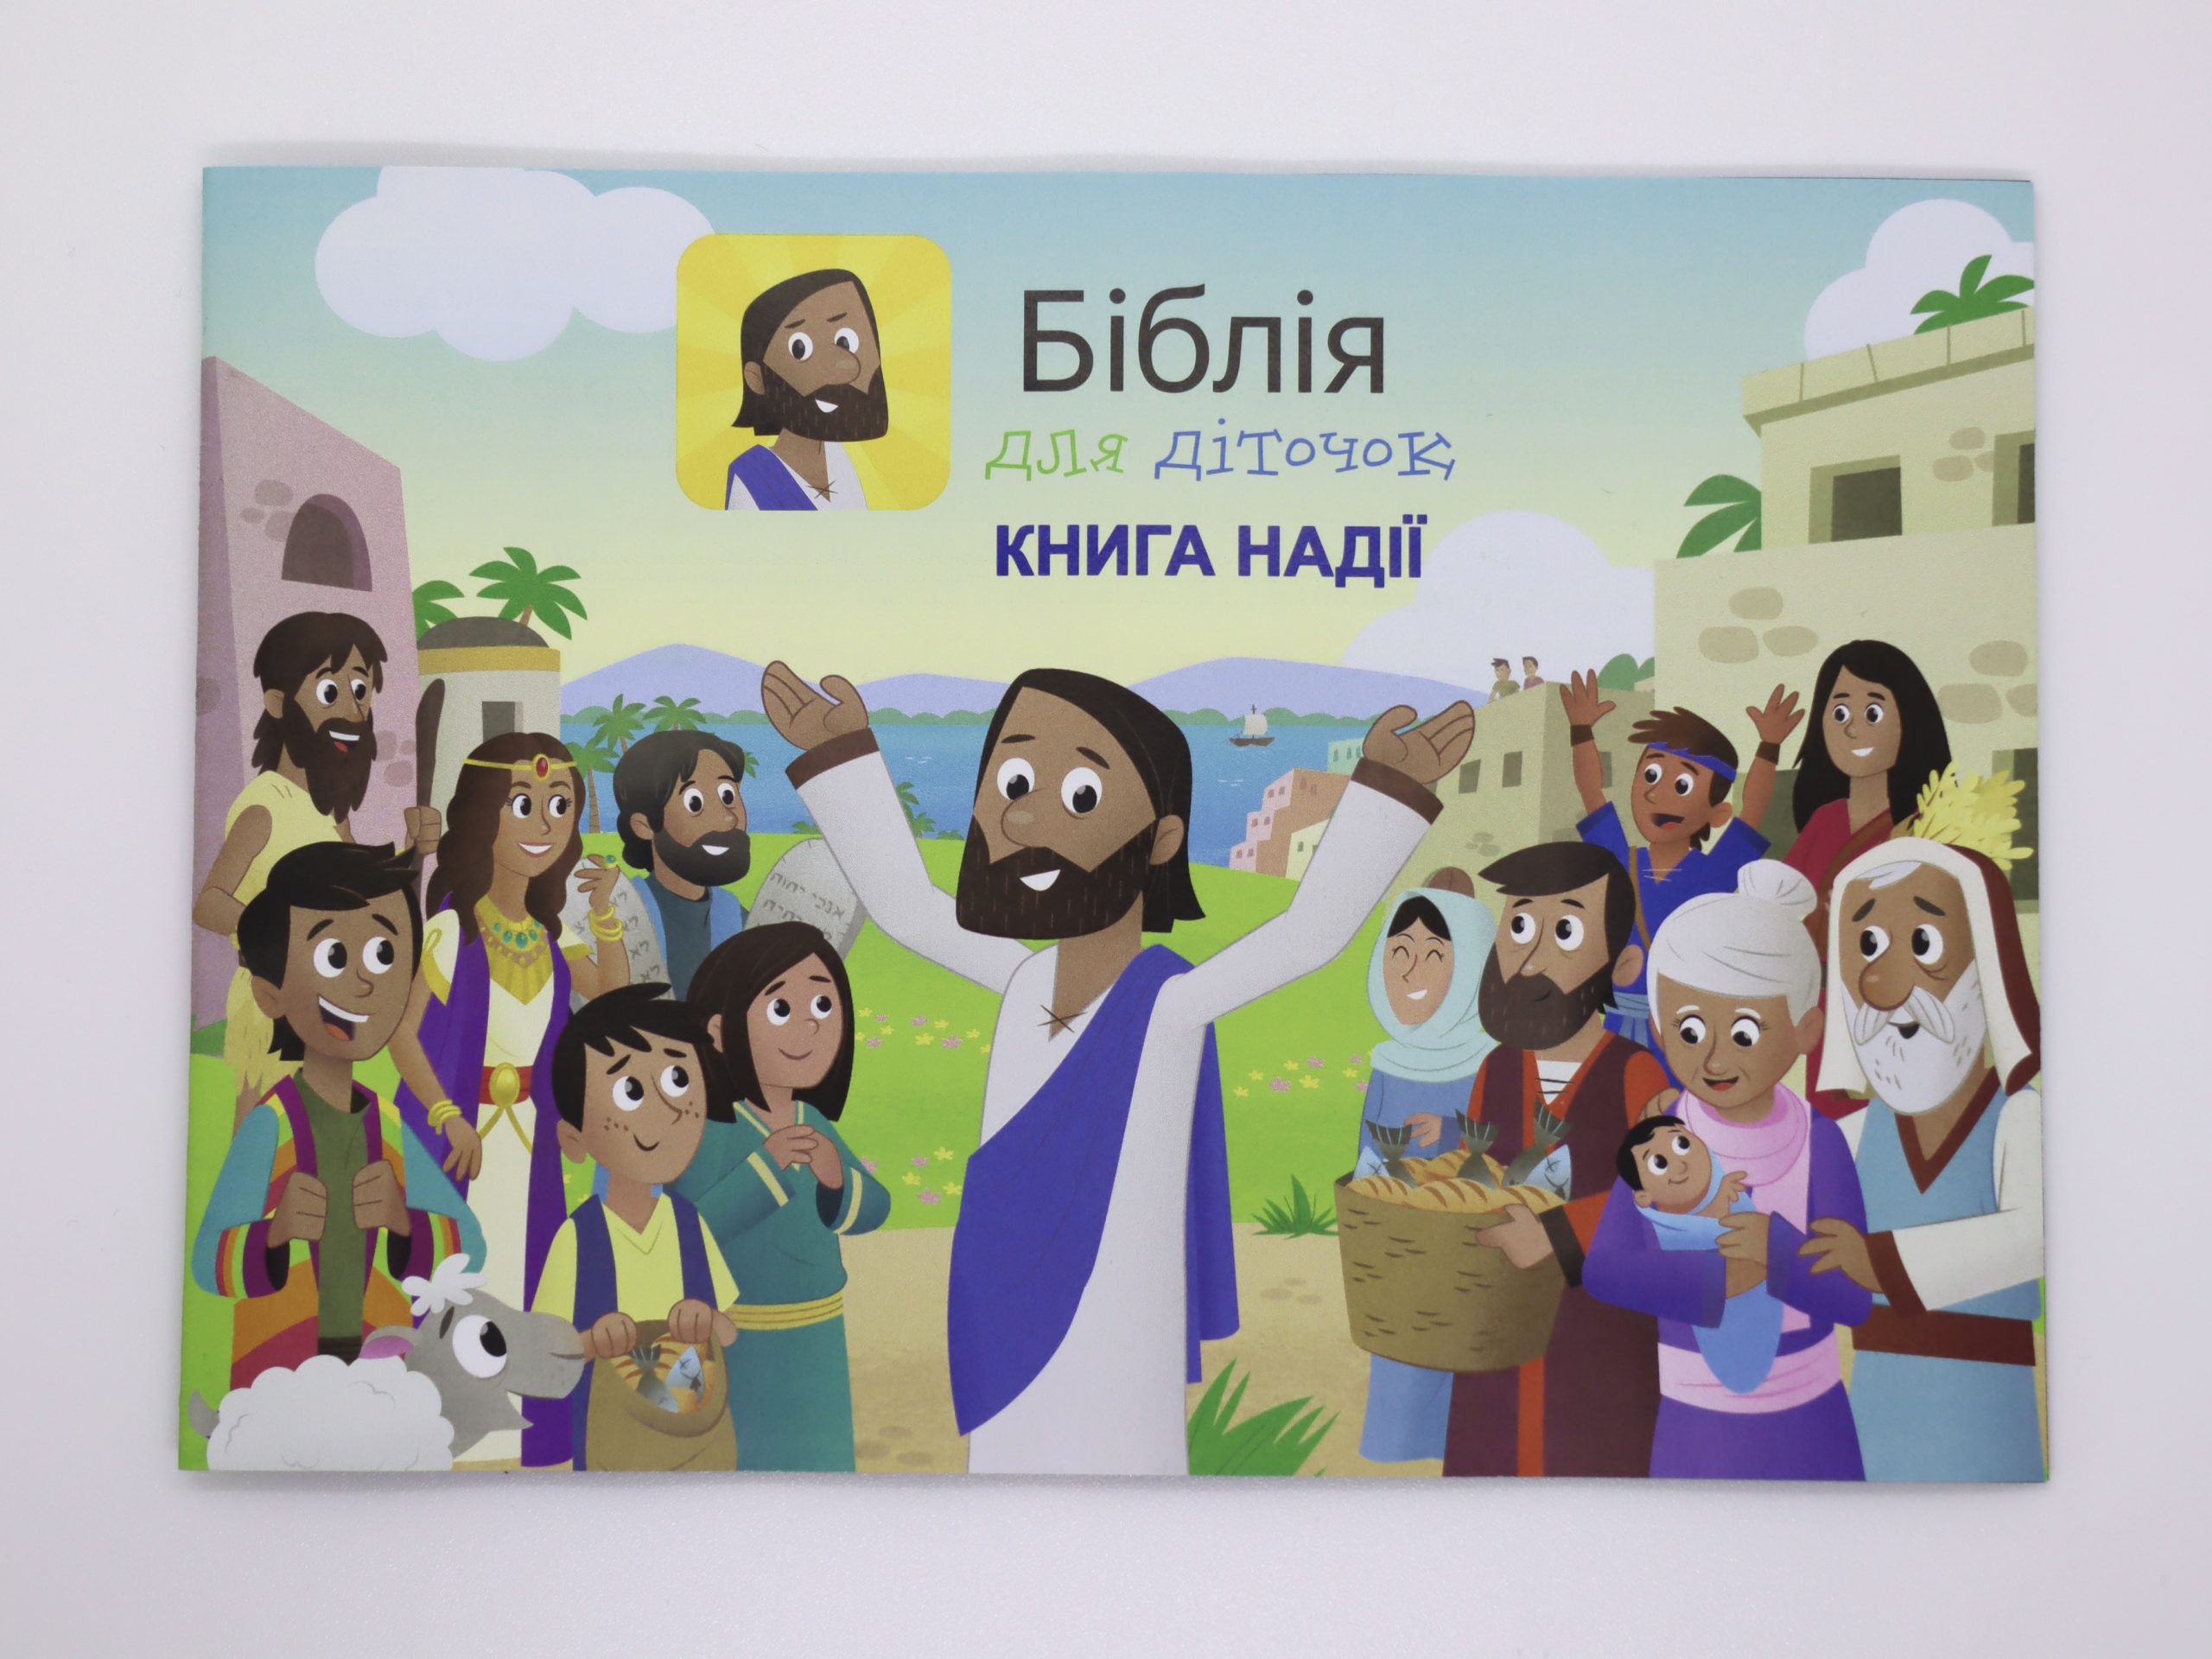 Supersuosittu Lasten Raamattusovellus Löytyy Myös Ukrainaksi